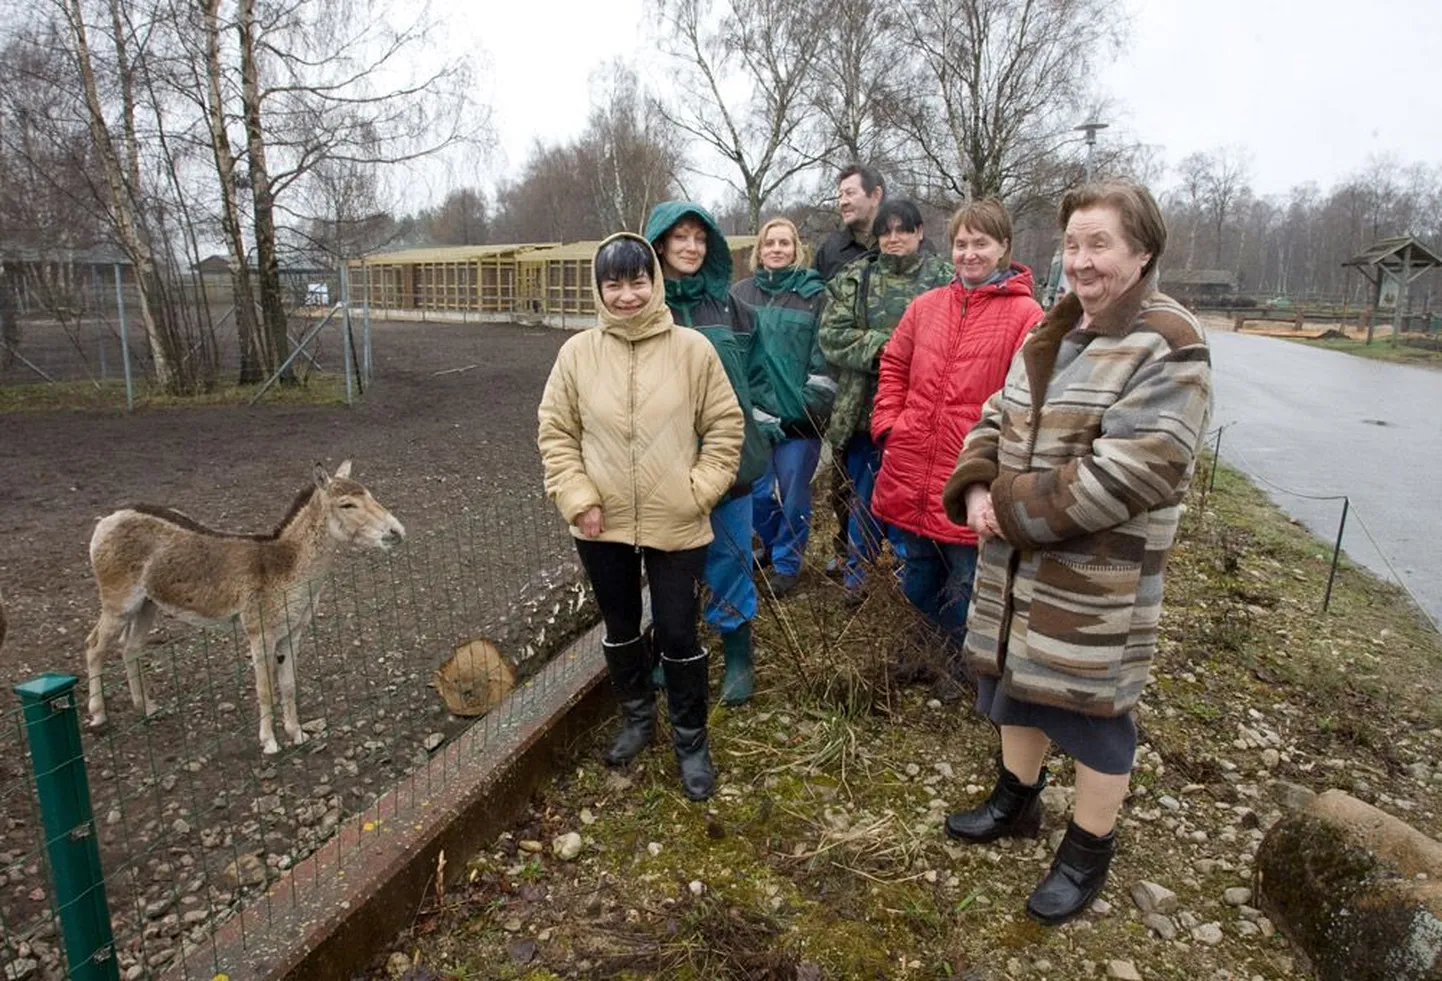 Niisugune seltskond saab loomaaias harva kokku, sest igaühel on oma töö eri kohas. Tatjana Miljutina (vasakult), Irina Salminen, Julia Pent, Vladimir Fainštein, Jana Sajadjan, Jelena Semjonova ning Jevgenia Jefimova.